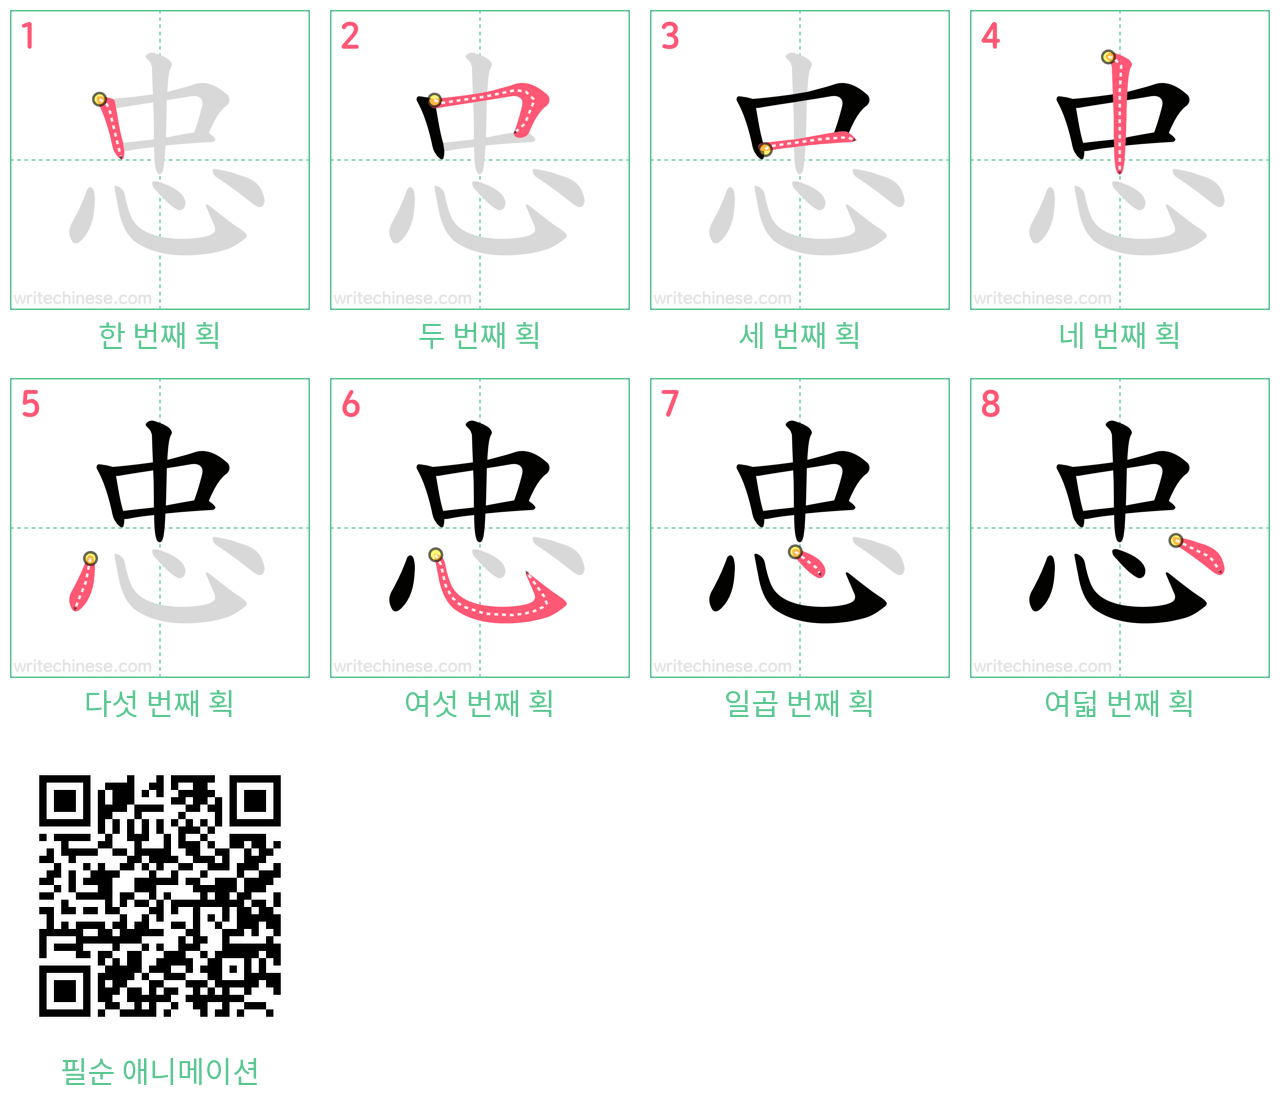 忠 step-by-step stroke order diagrams